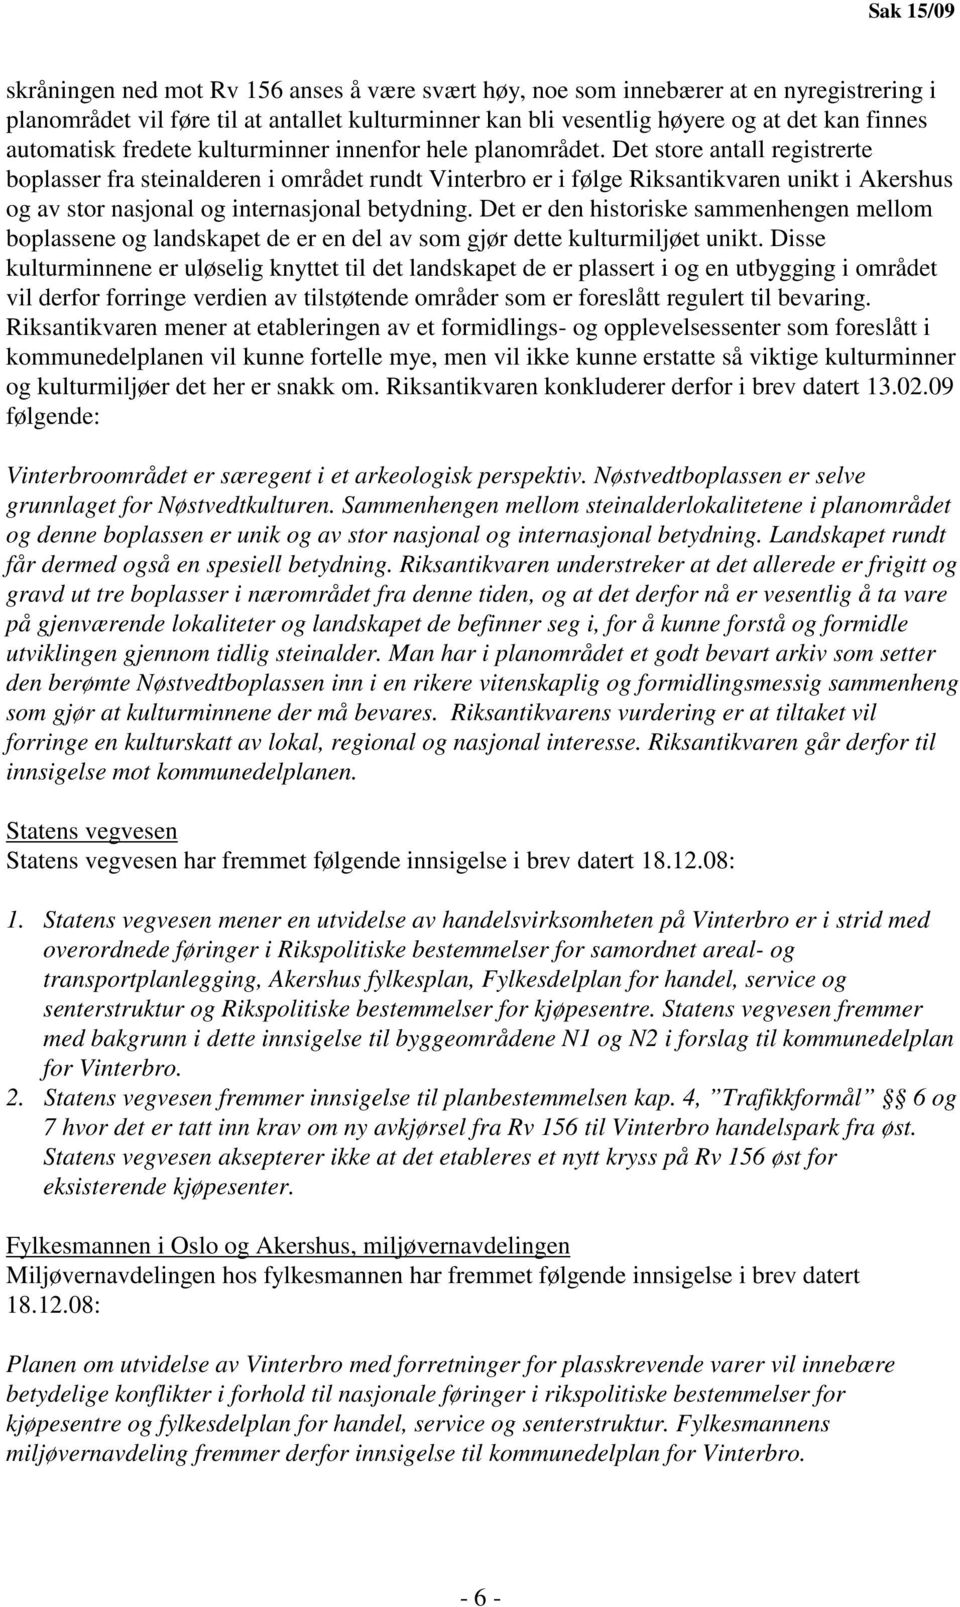 Det store antall registrerte boplasser fra steinalderen i området rundt Vinterbro er i følge Riksantikvaren unikt i Akershus og av stor nasjonal og internasjonal betydning.